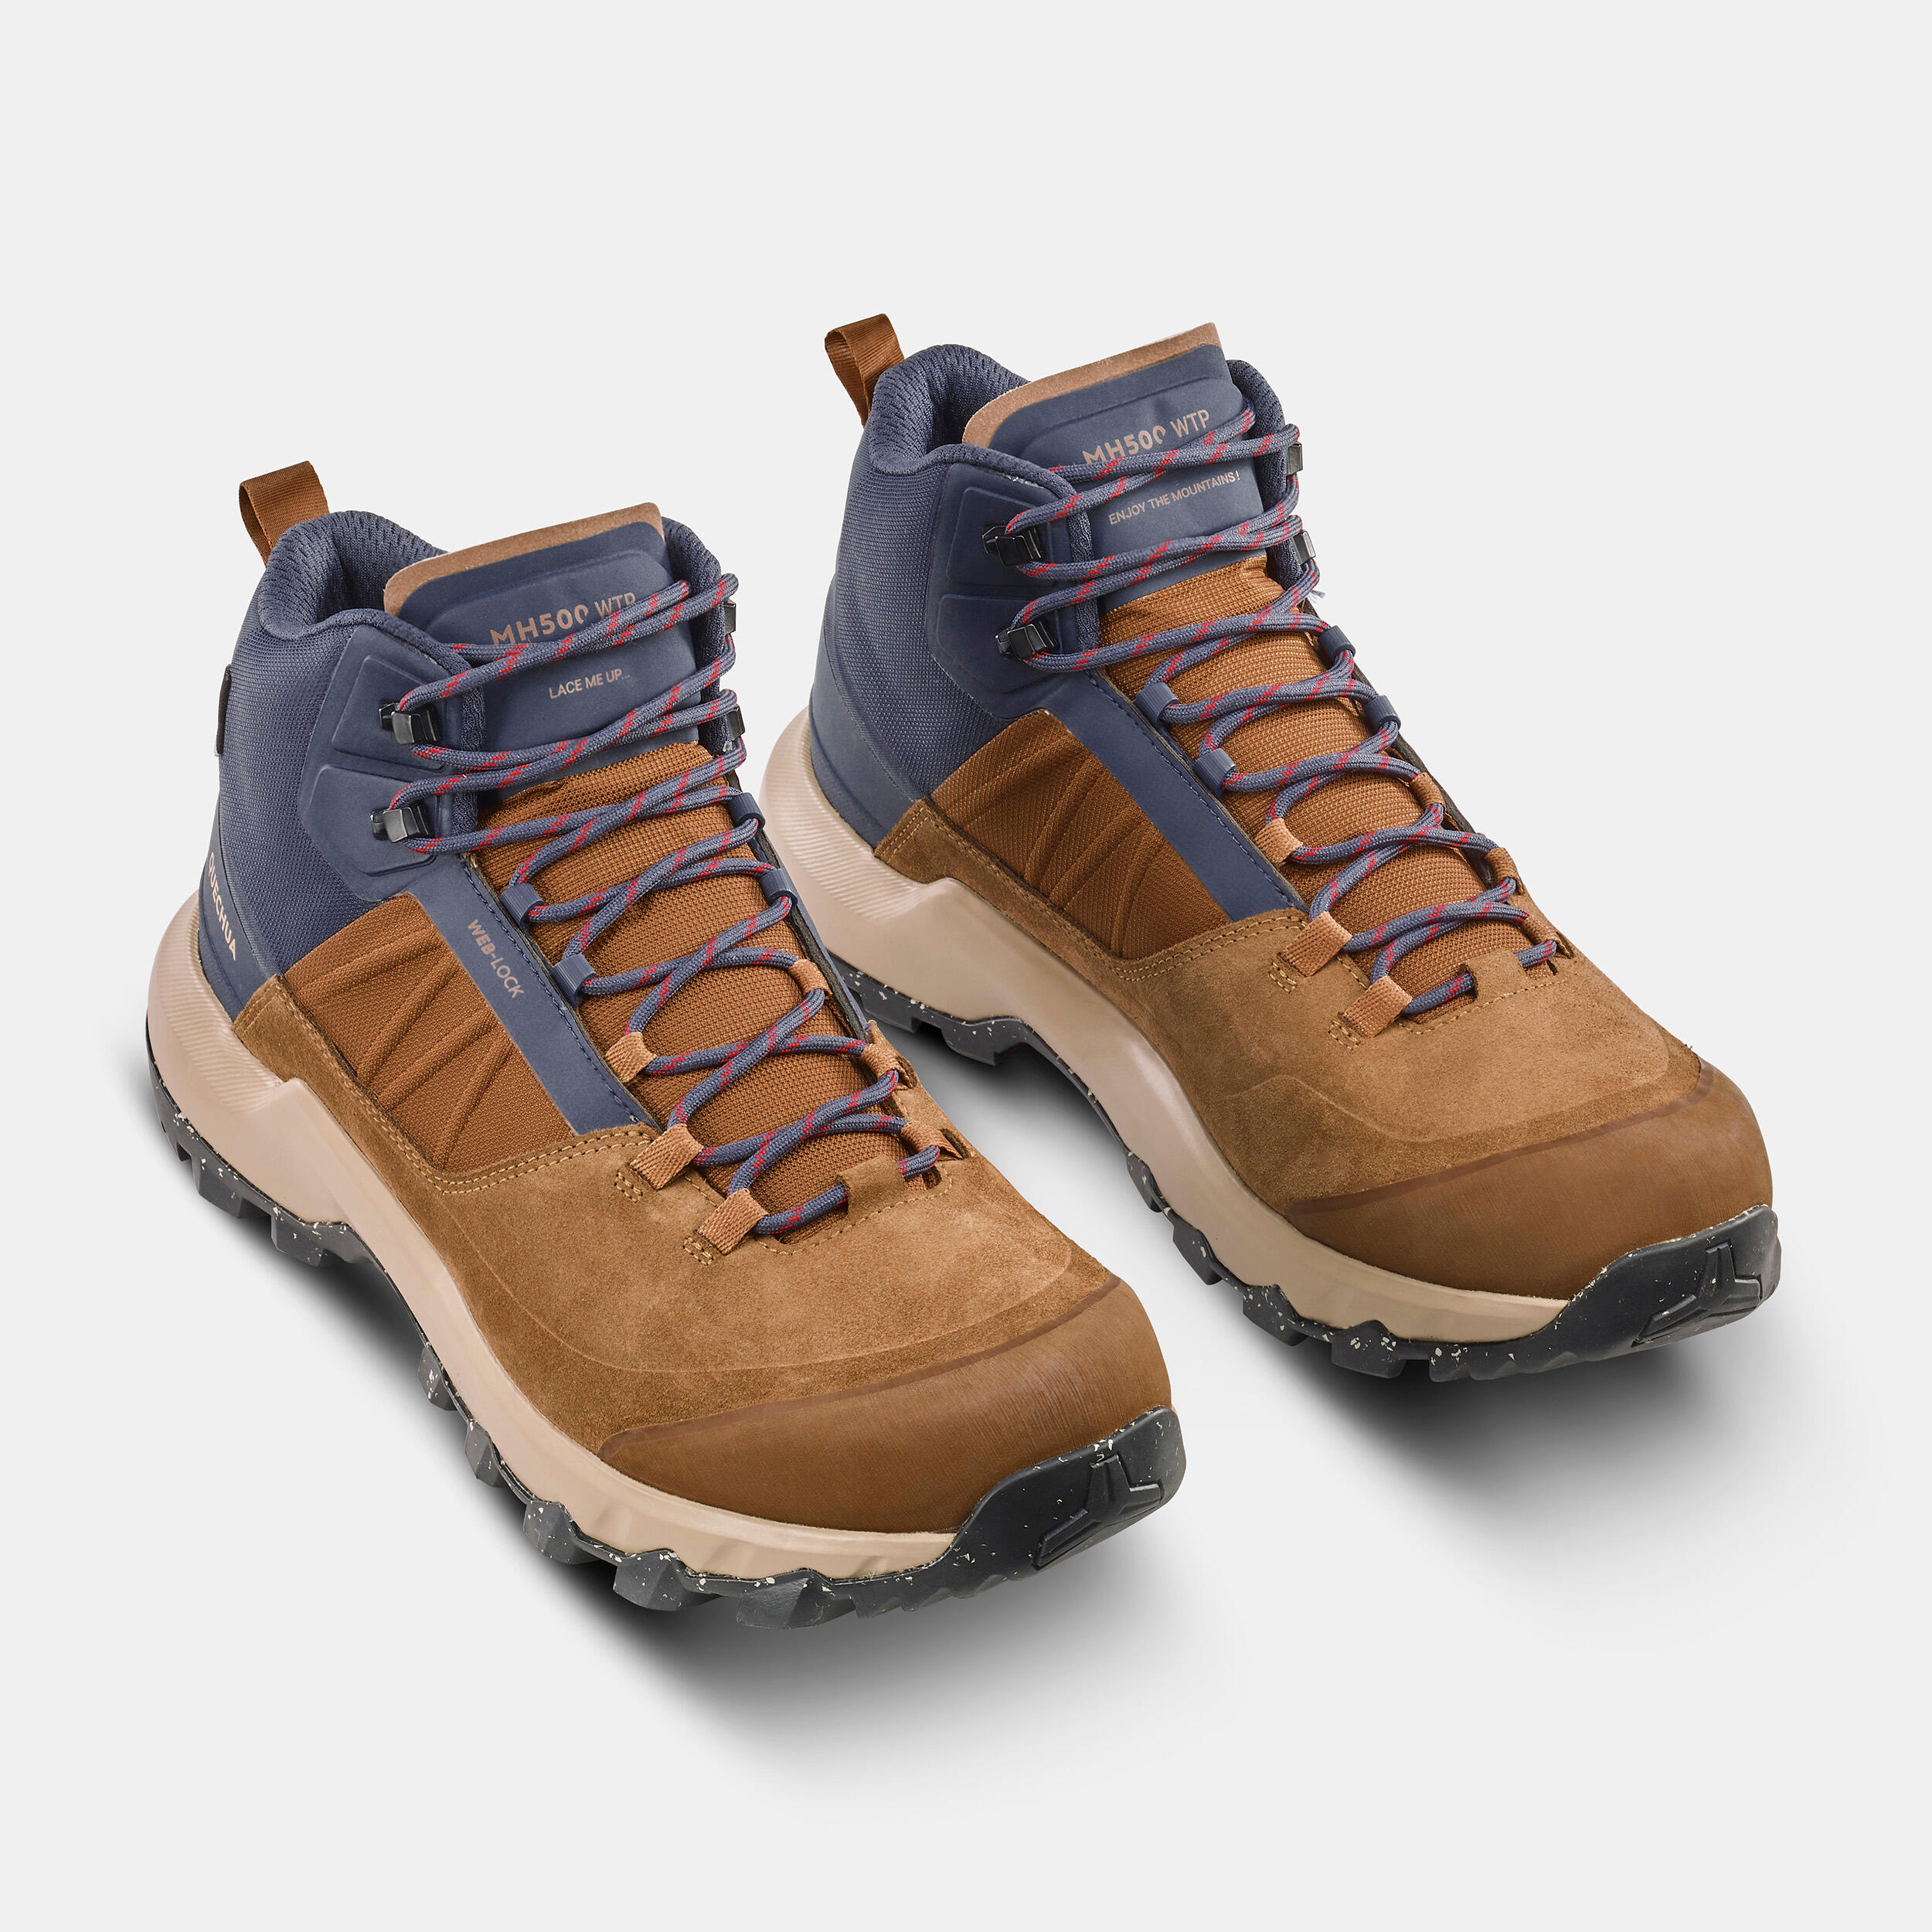 Men’s Waterproof Hiking Boots - MH 500 Brown - Golden chestnut, Dark ...